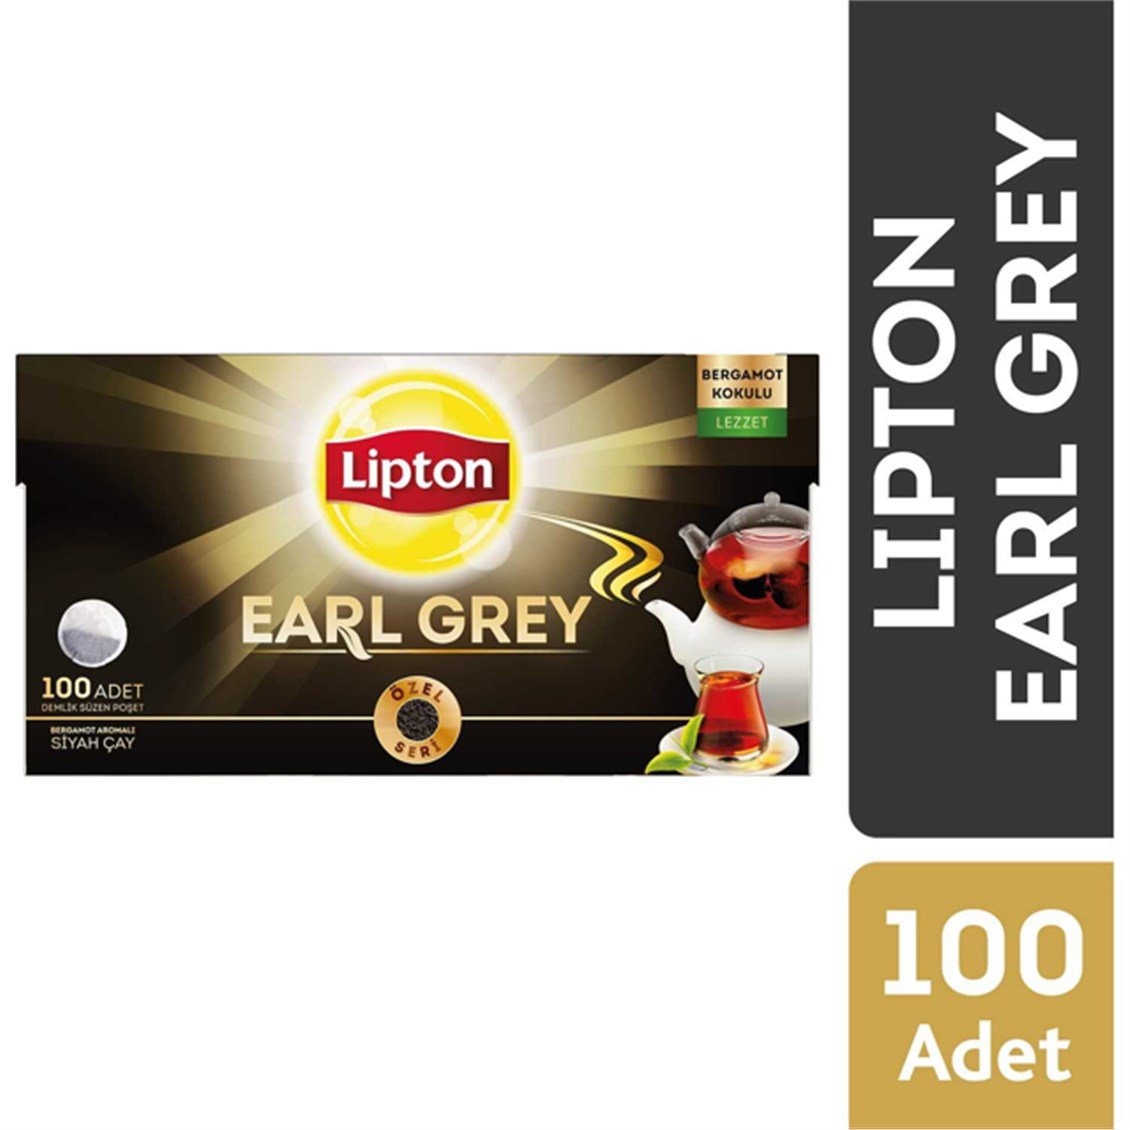 Lipton Earl Grey Demlik Poşet Çay 100'Lü 320 Gr - Onur Market